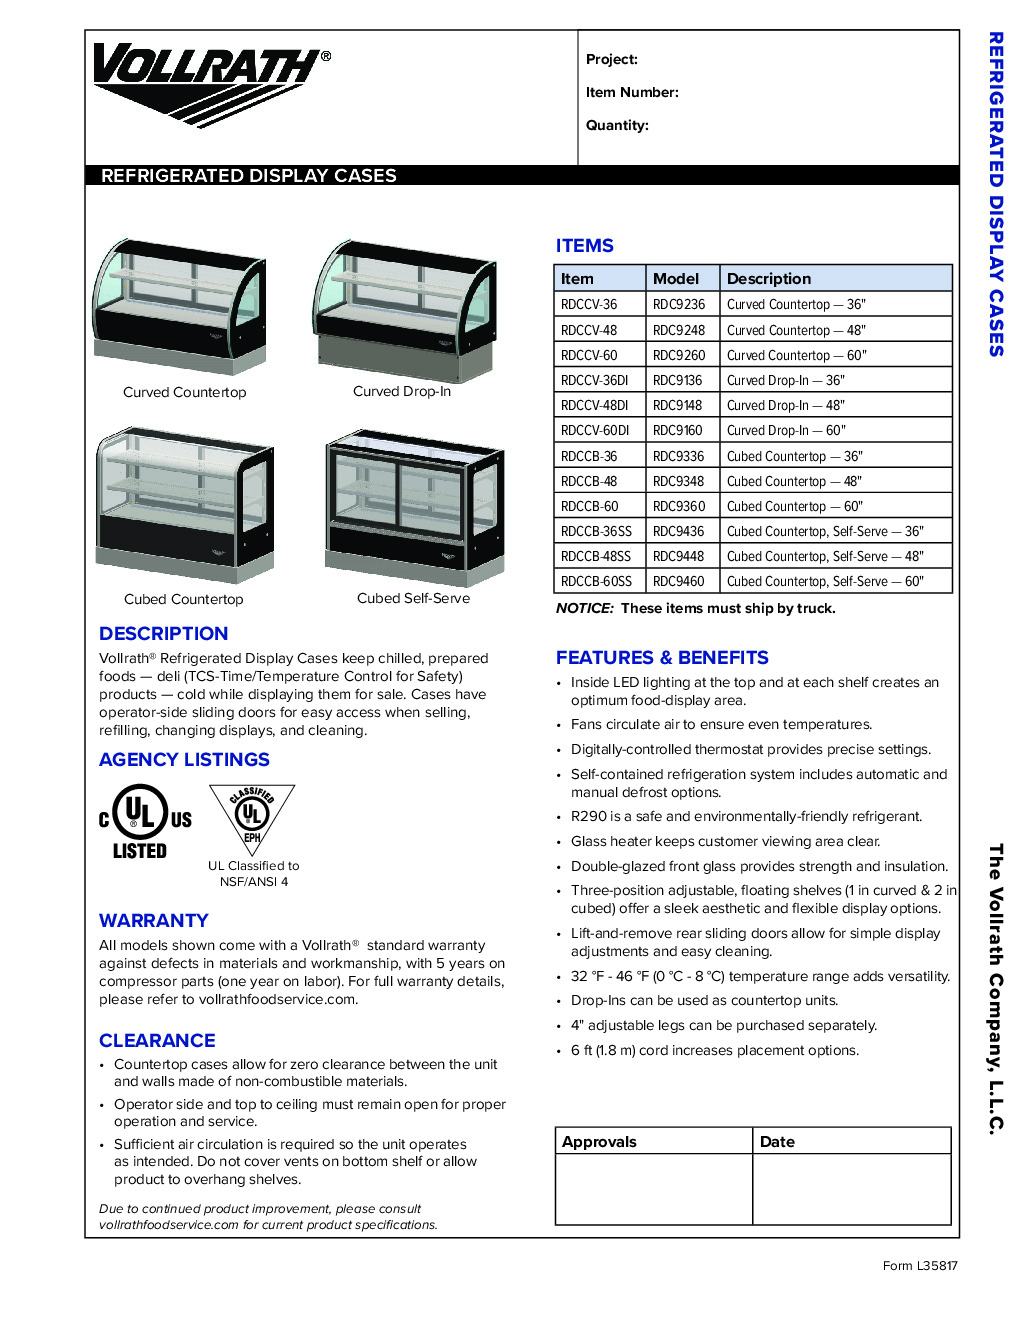 Vollrath RDCCV-60DI Drop In Refrigerated Display Case